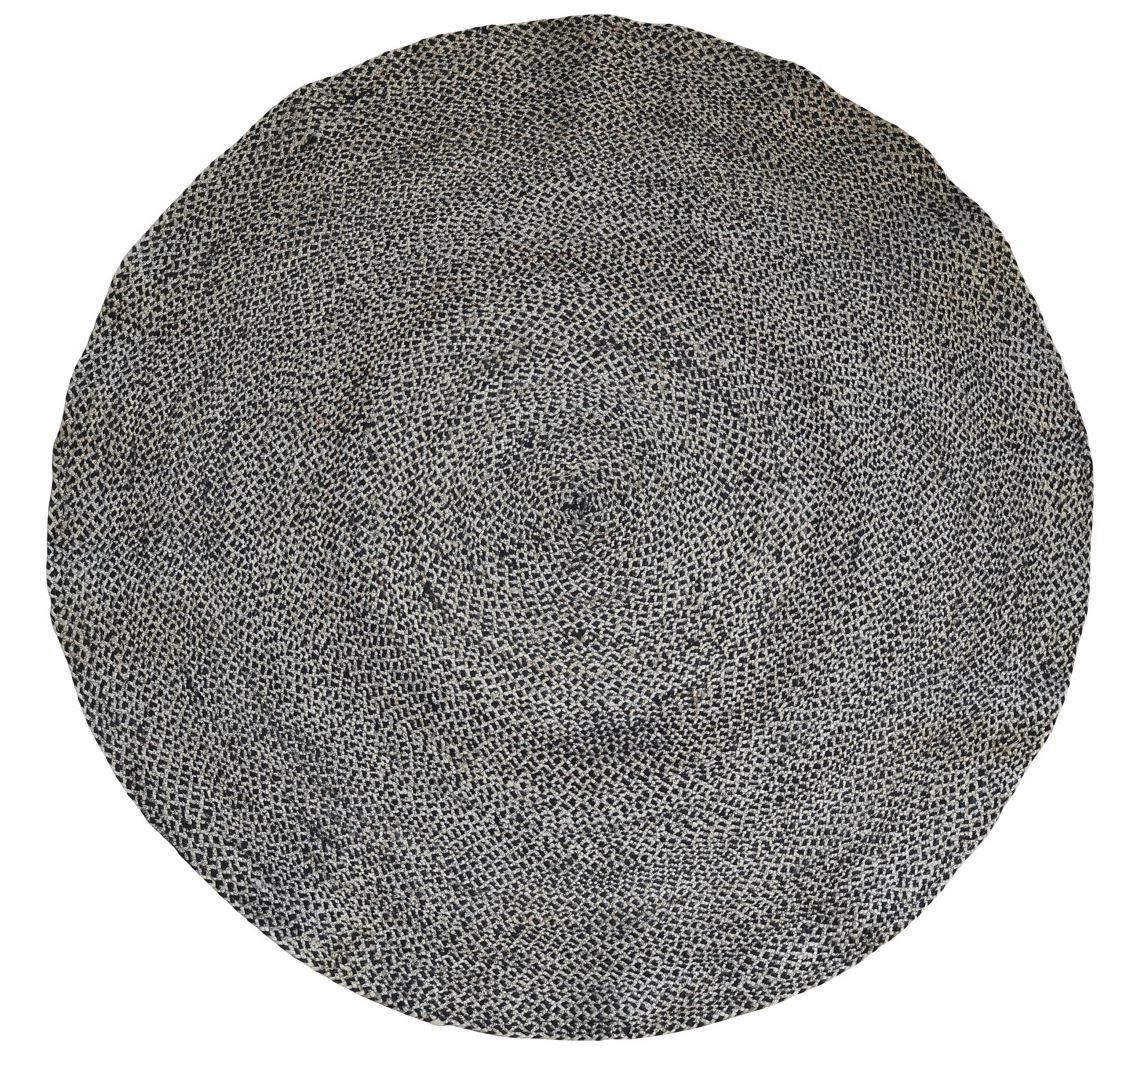 Přírodně - černý kulatý jutový koberec Bunio - Ø 160 cm Chic Antique